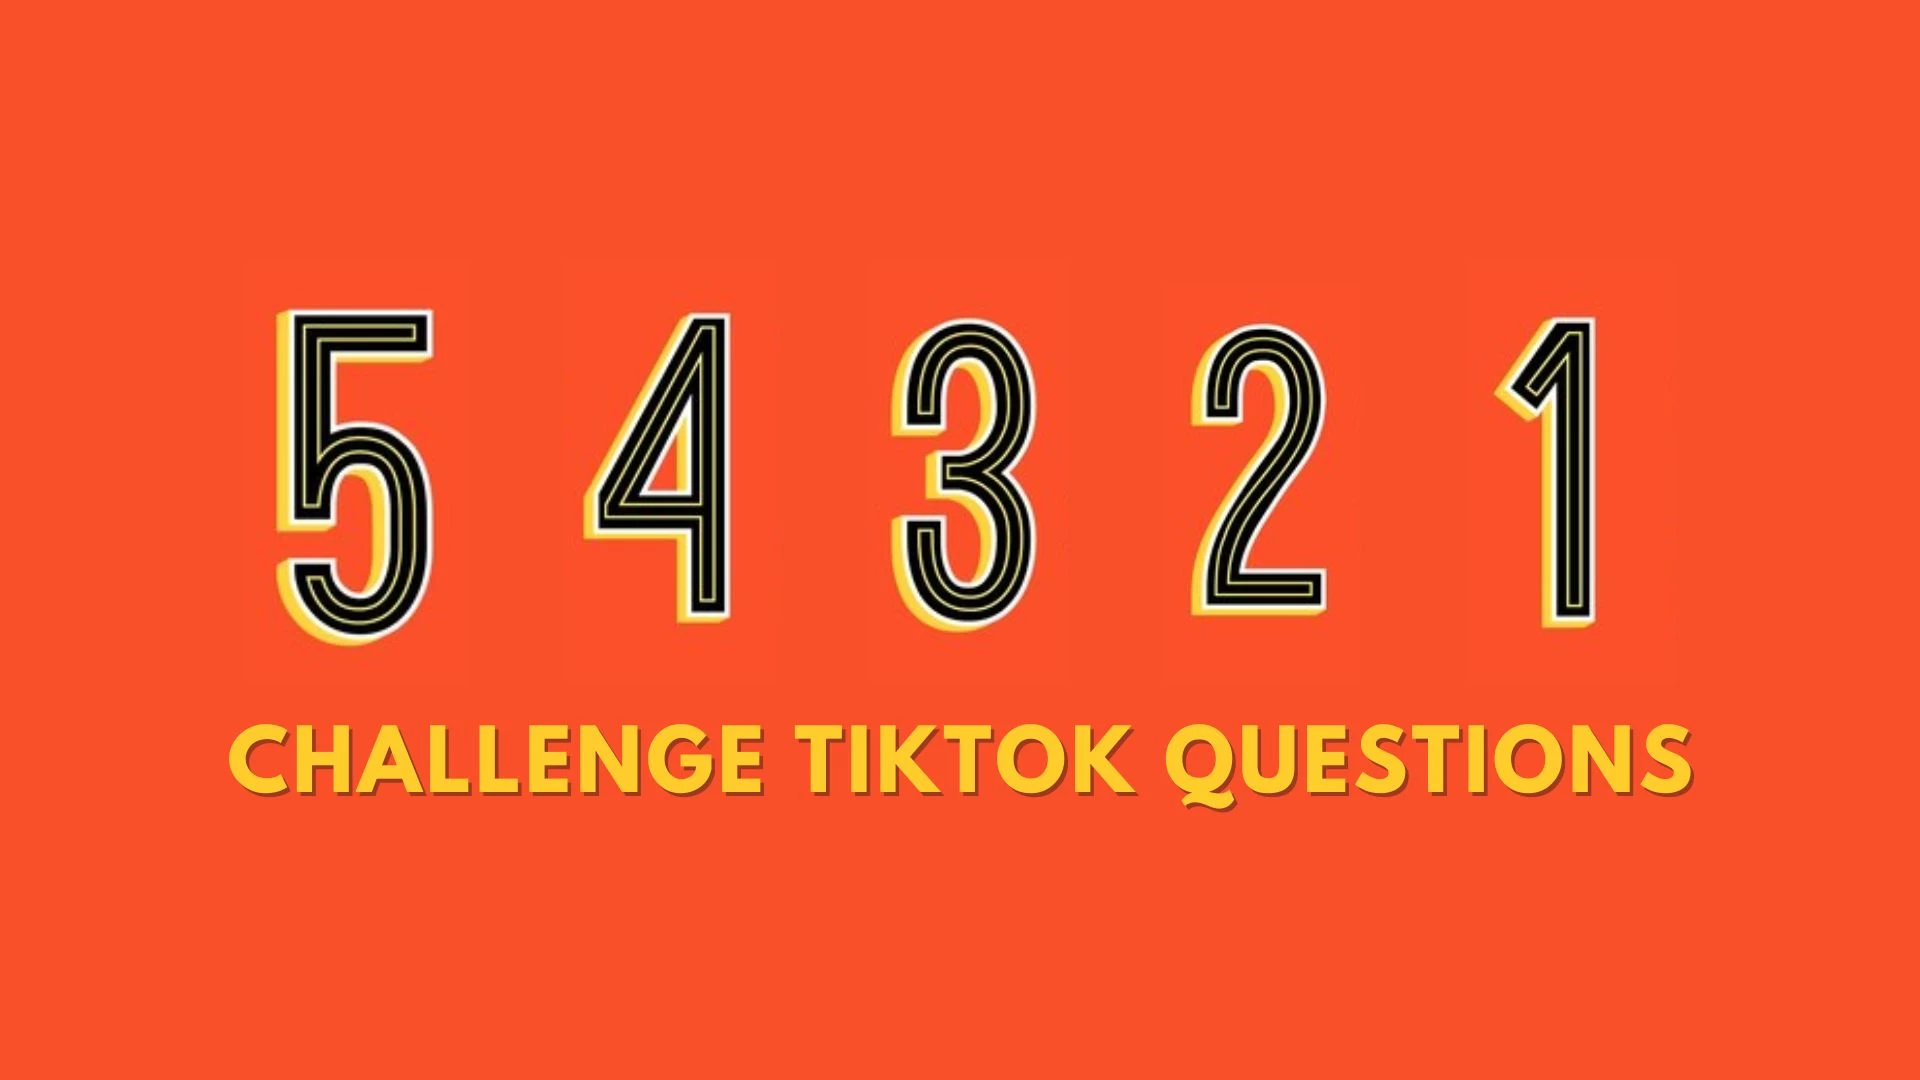 Preguntas del Desafío 54321 Tiktok, ¿Cómo hacer el Desafío 54321?